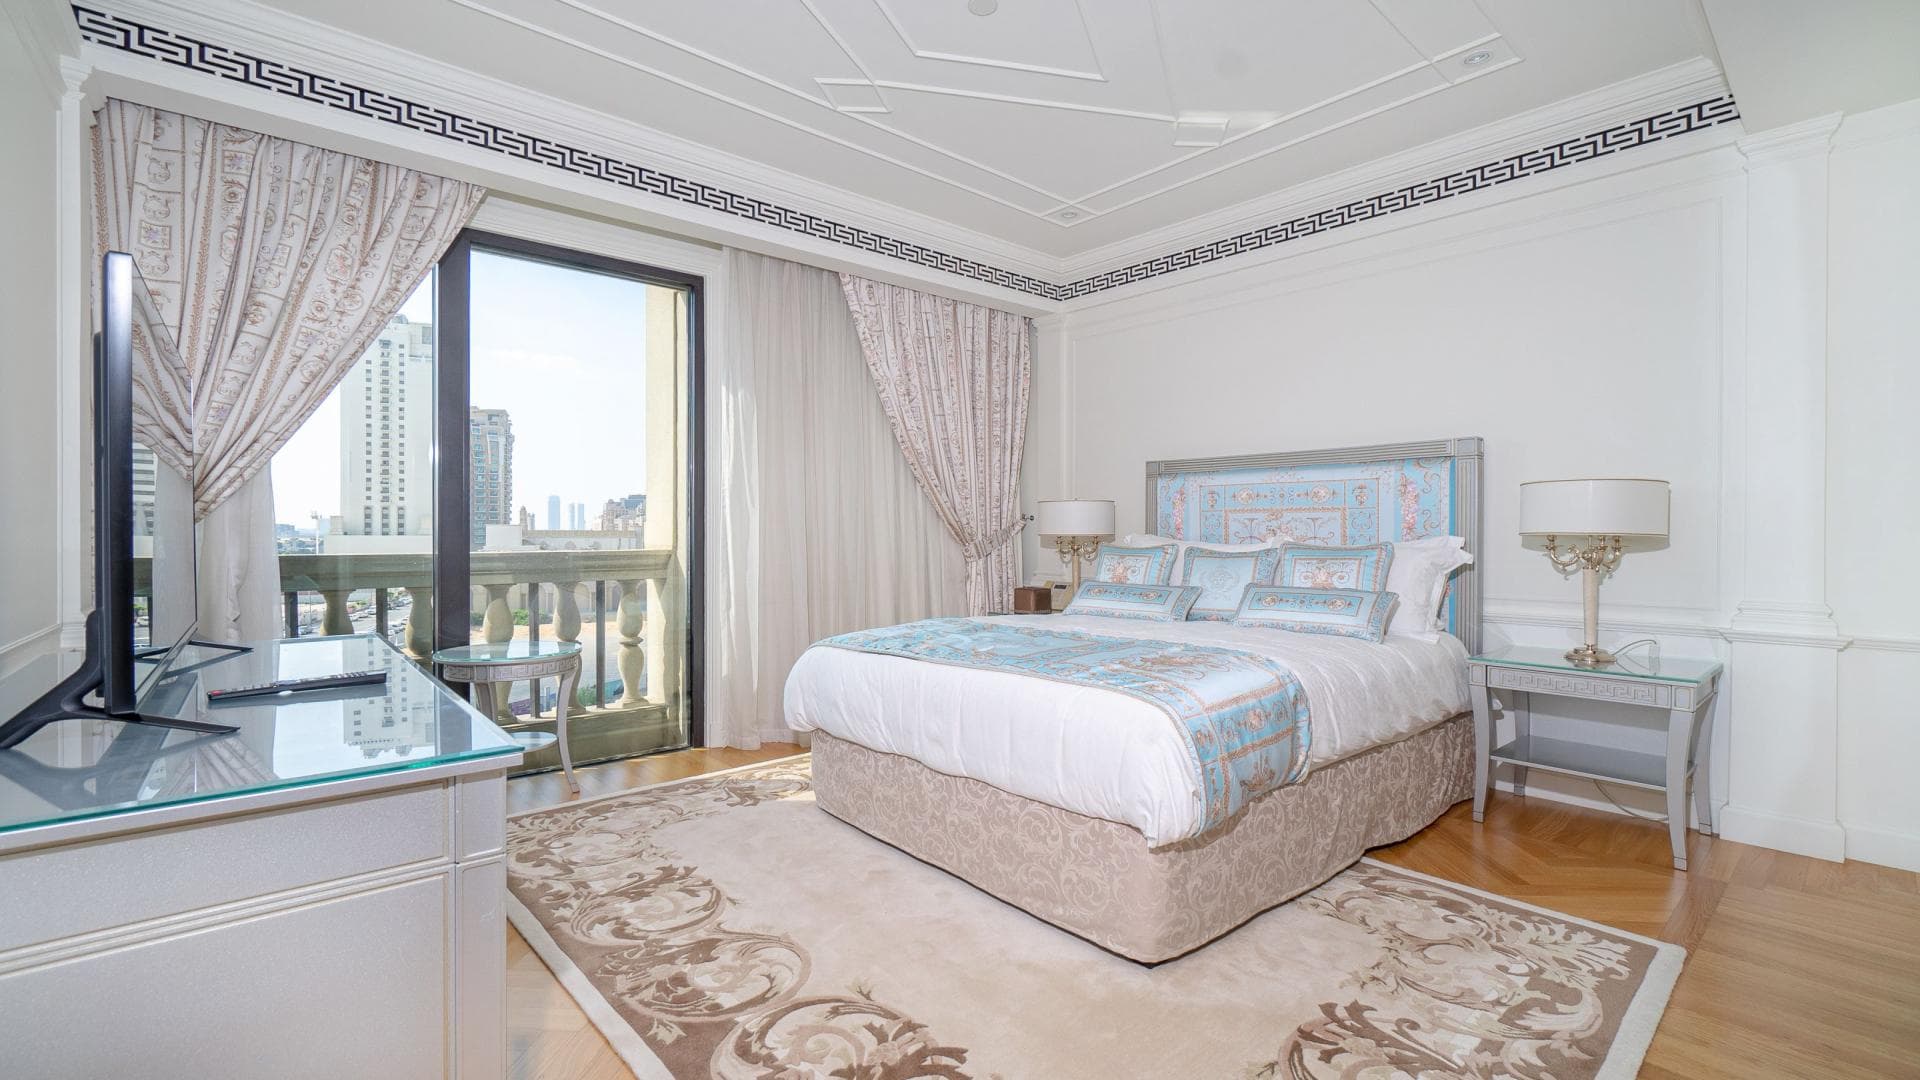 2 Bedroom Apartment For Rent Sadaf 7 Lp36800 E60a74749e7f680.jpeg